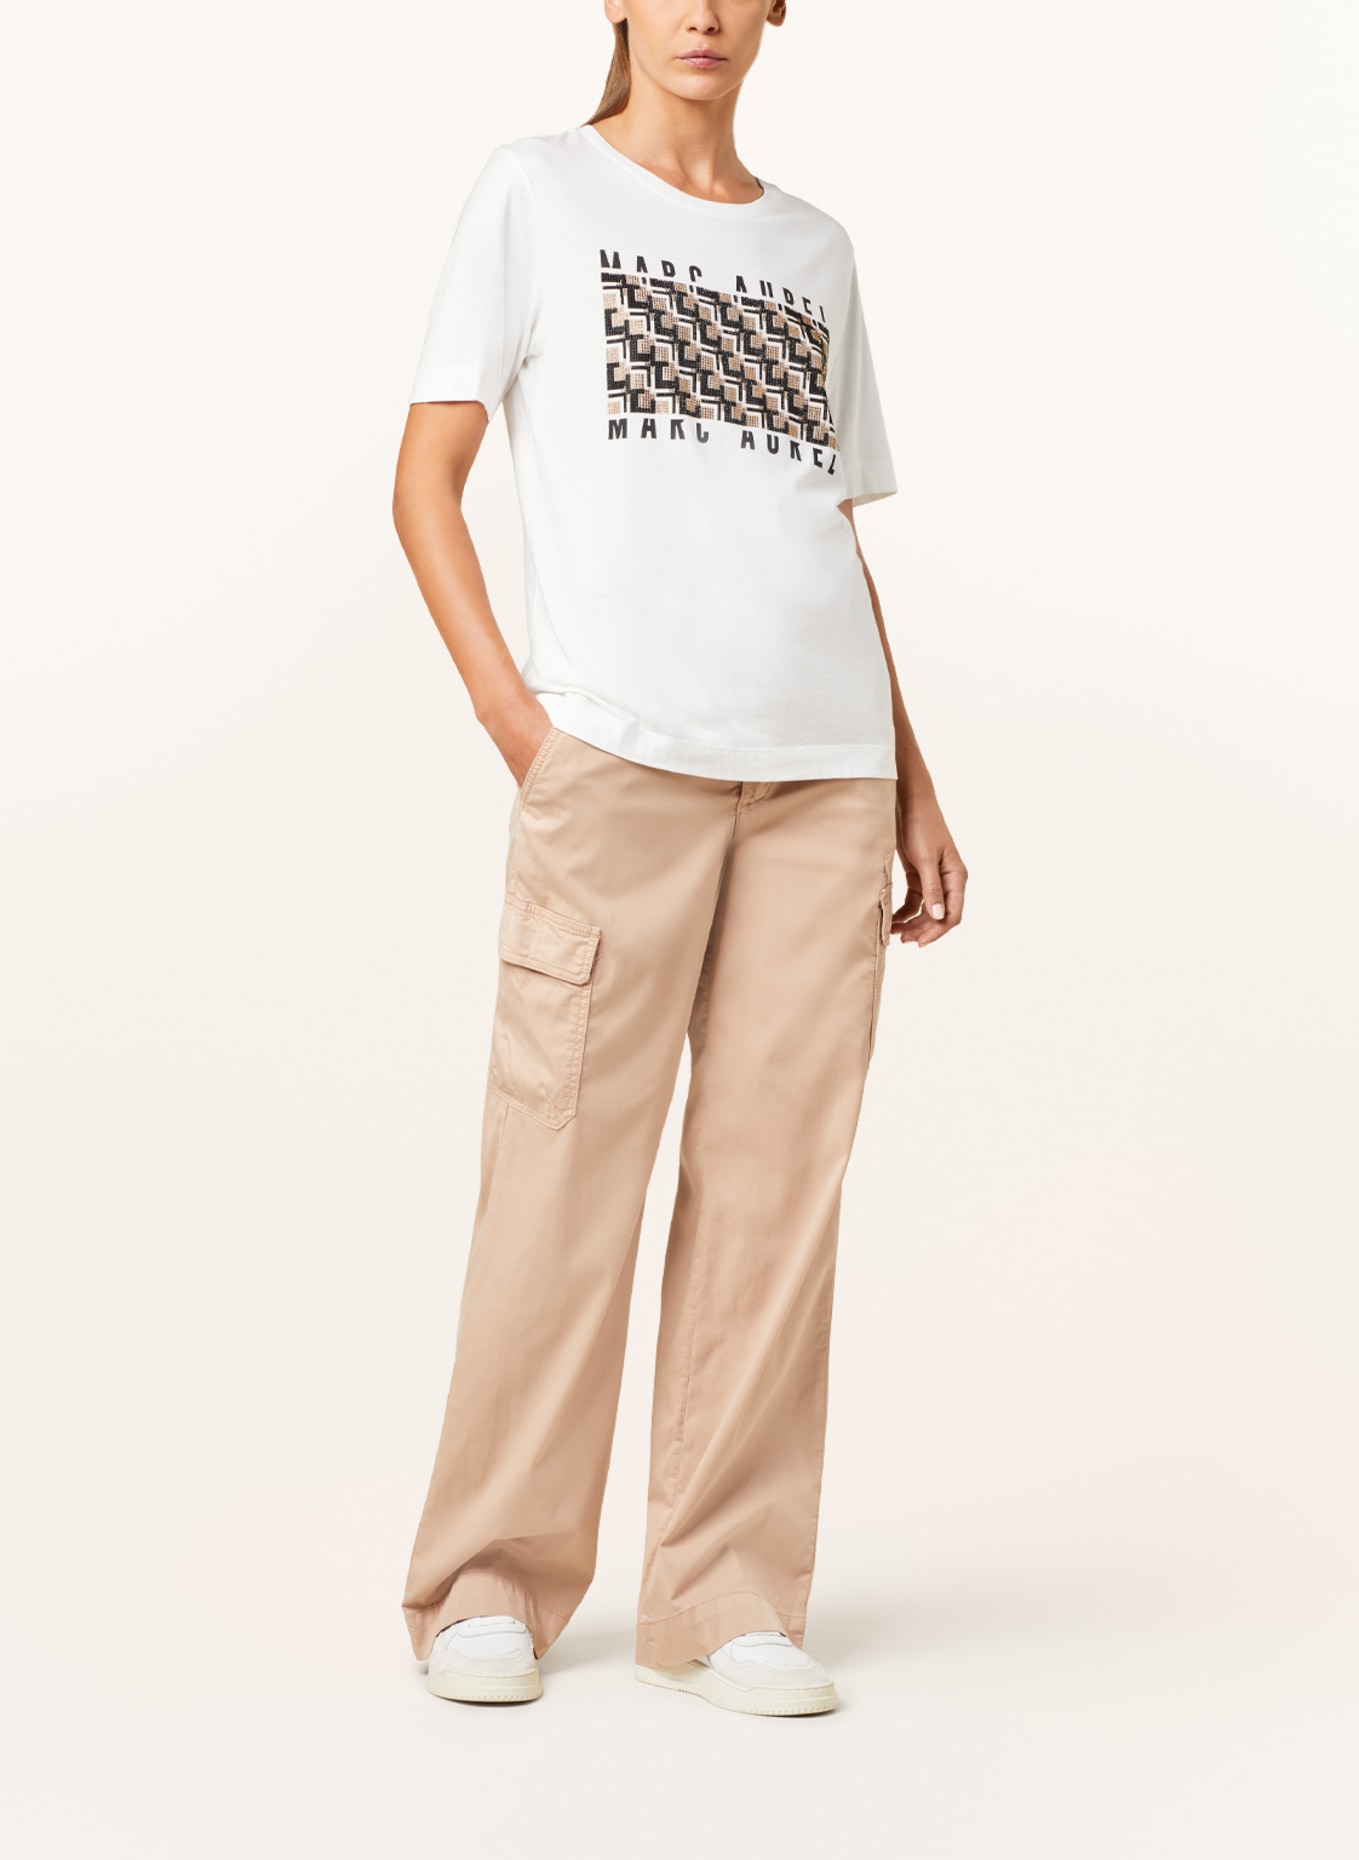 MARC AUREL T-Shirt mit Schmucksteinen, Farbe: WEISS (Bild 2)